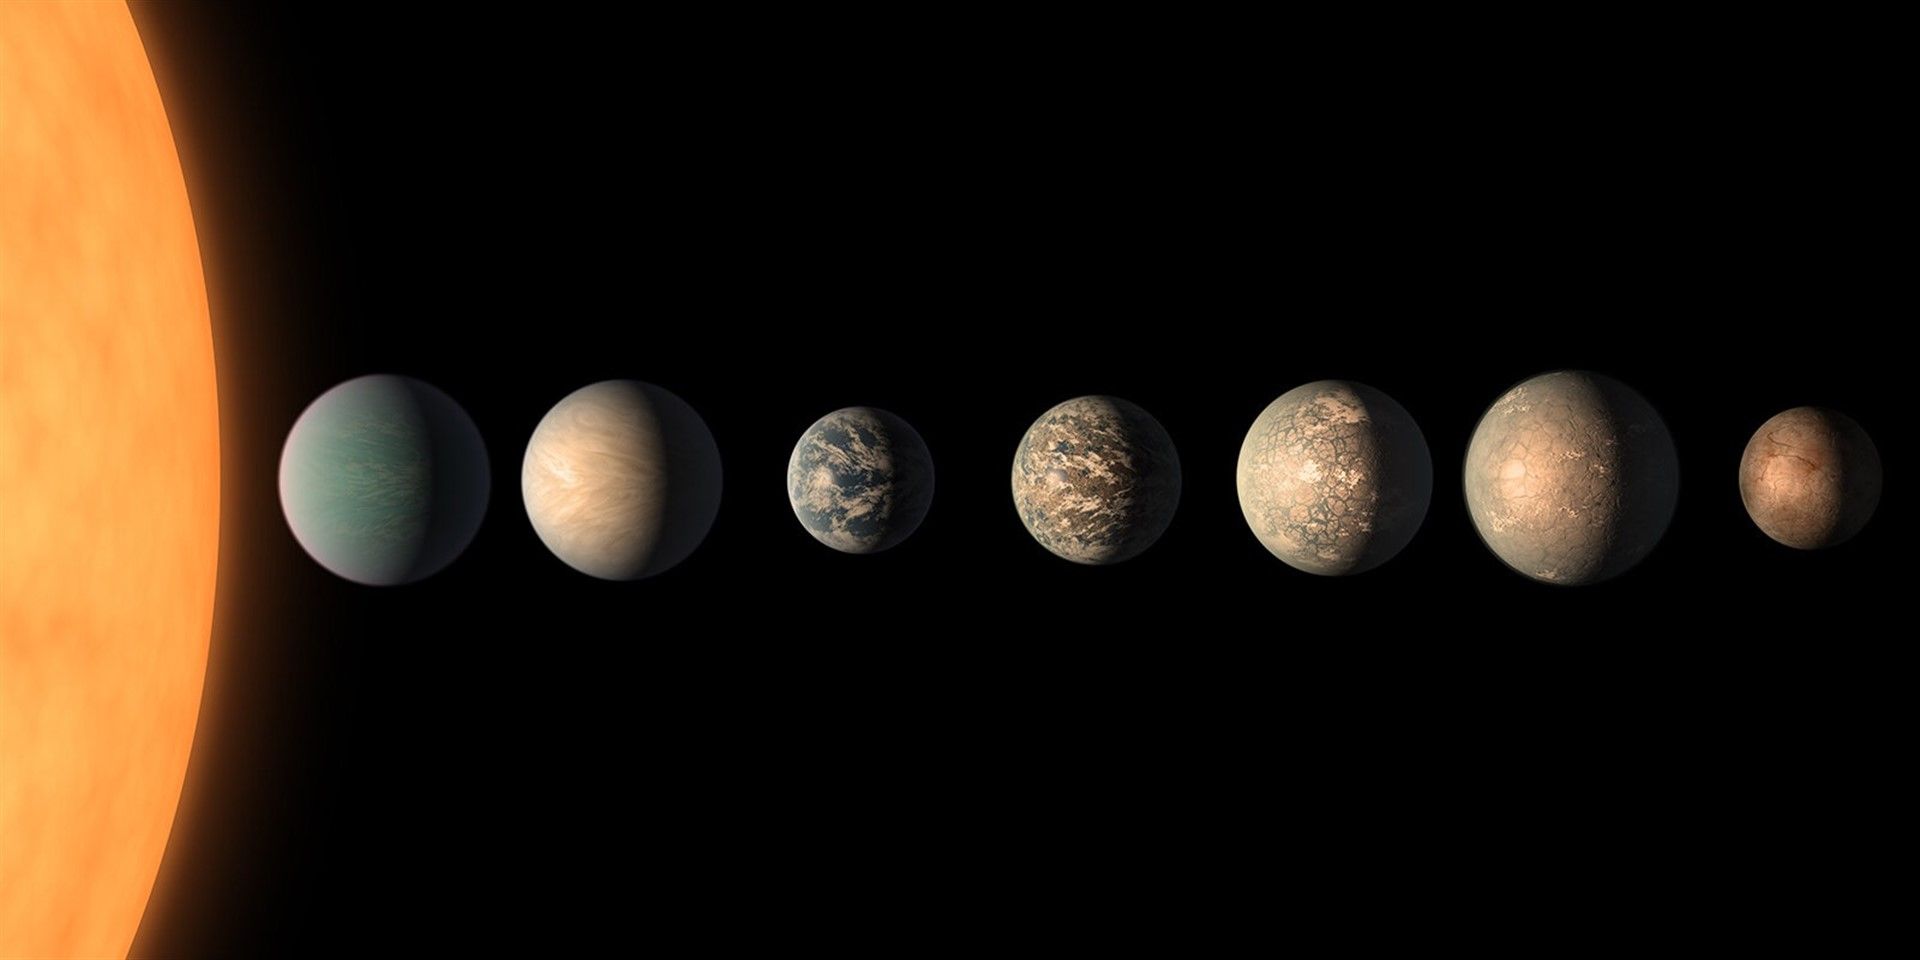 Comparación de algunos de los exoplanetas y la Tierra / Foto: NASA - Jet Propulsion Laboratory - Caltech